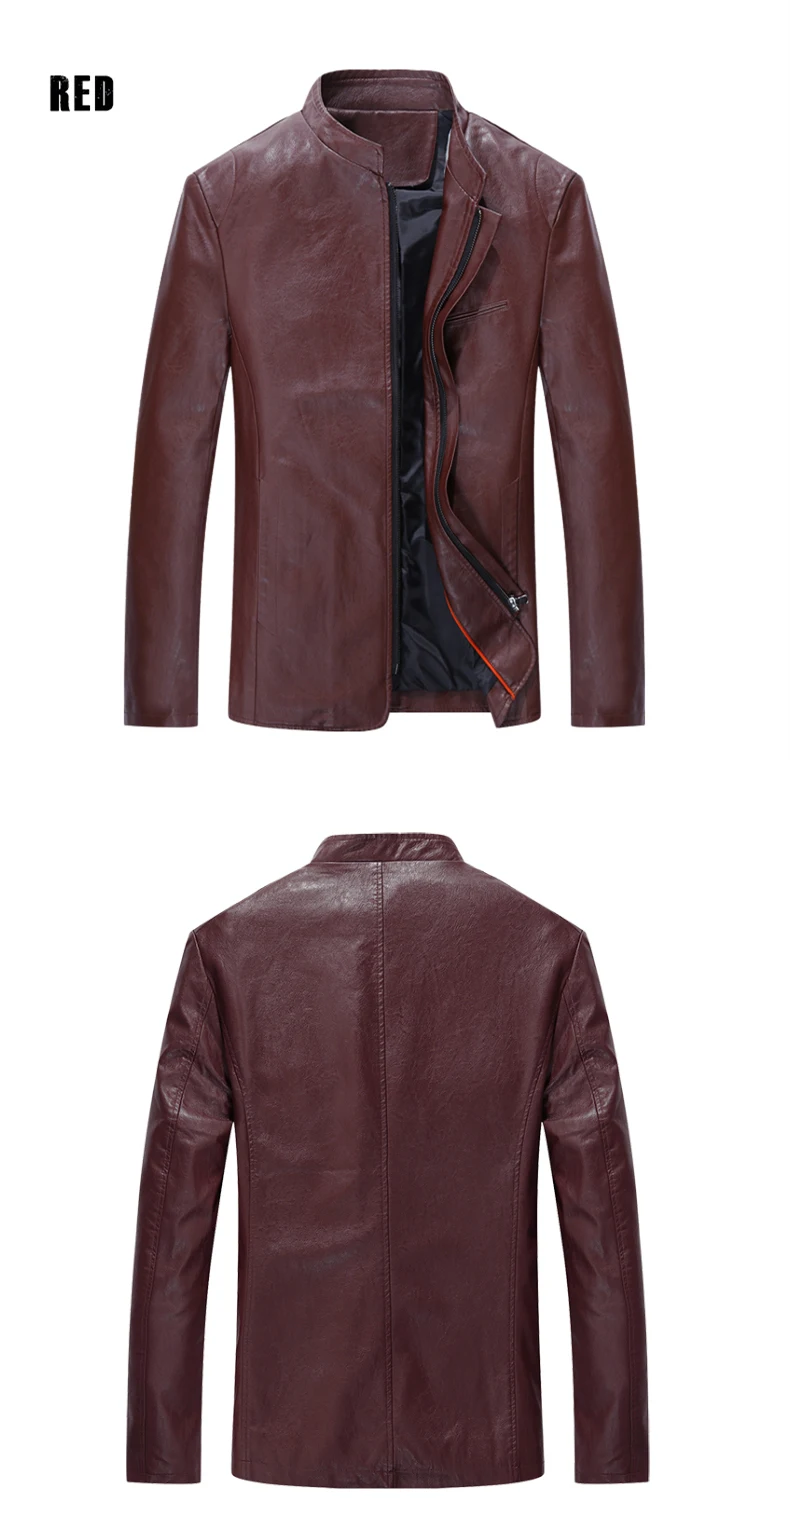 QANBO Новое поступление весенняя куртка из искусственной кожи Модная брендовая одежда мужские мотоциклетные кожаные куртки черные приталенные пальто 5XL